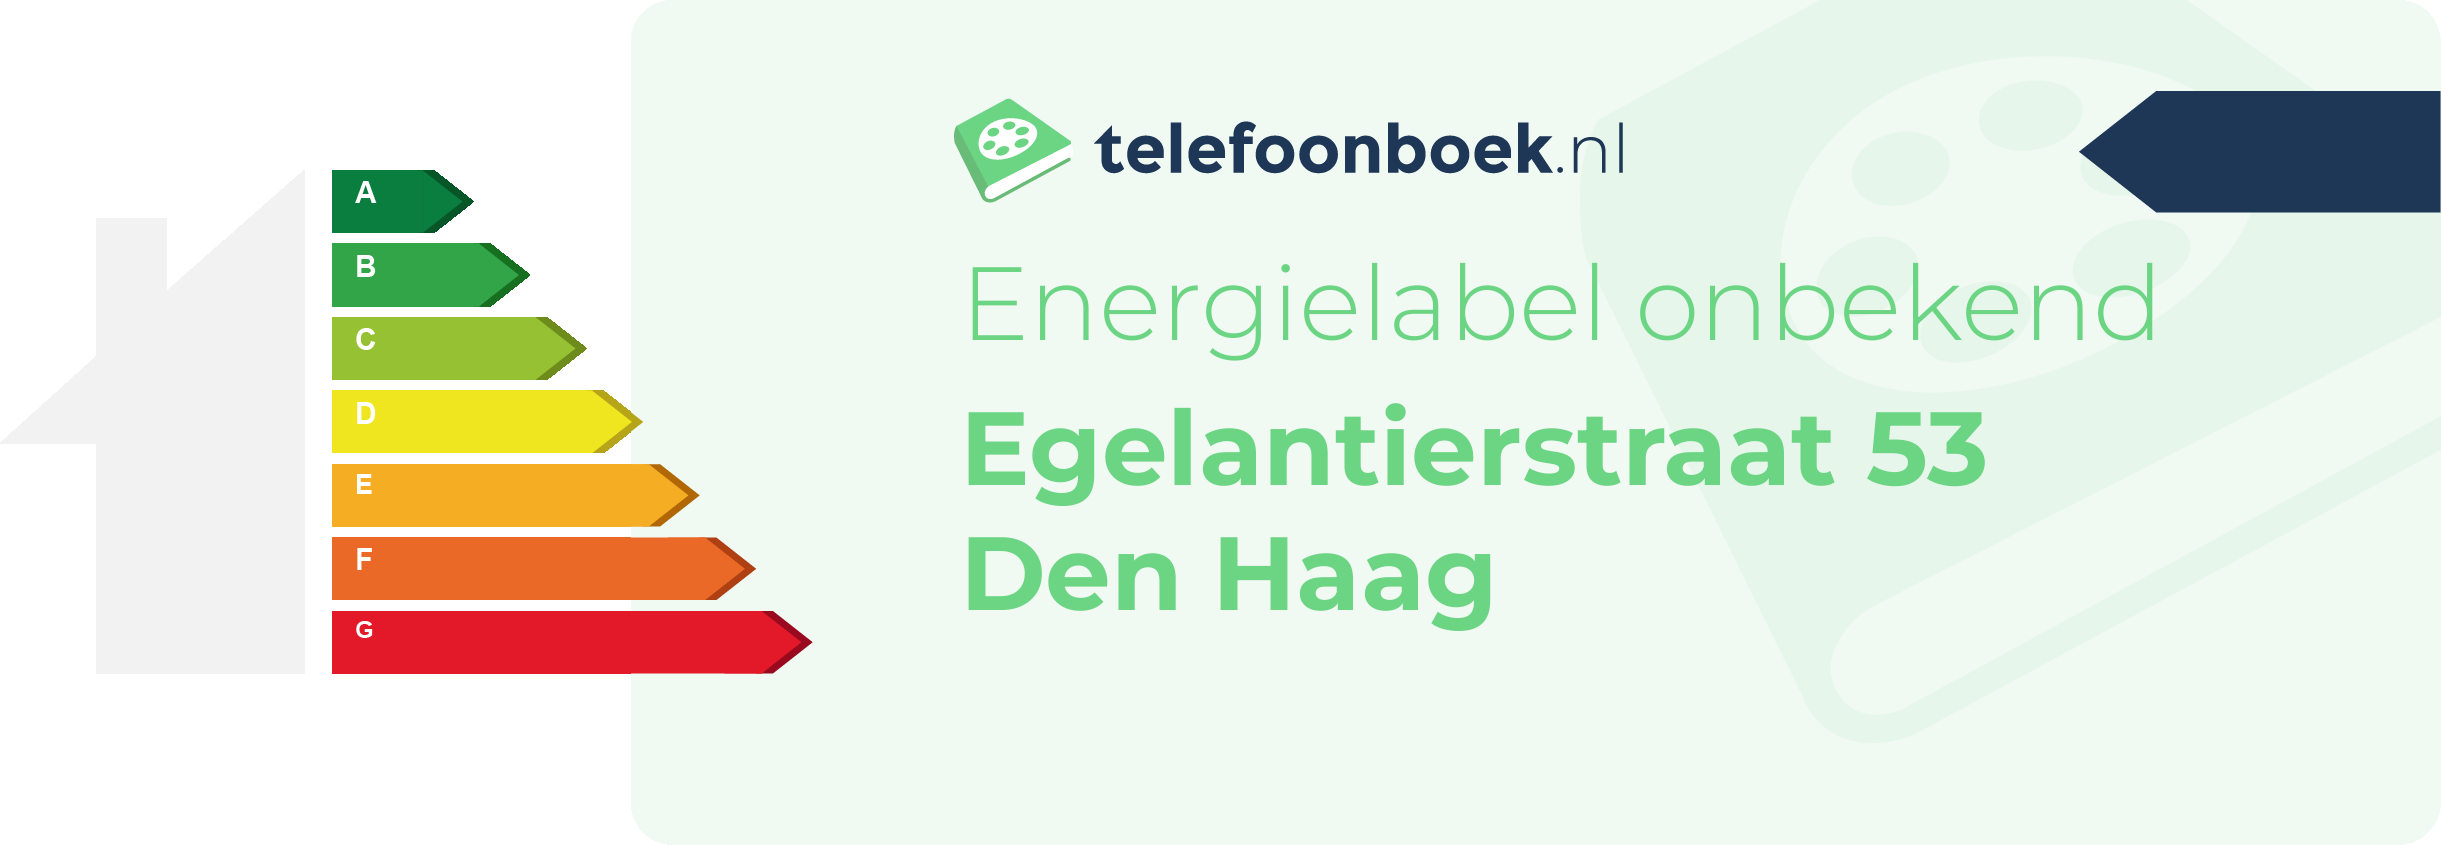 Energielabel Egelantierstraat 53 Den Haag